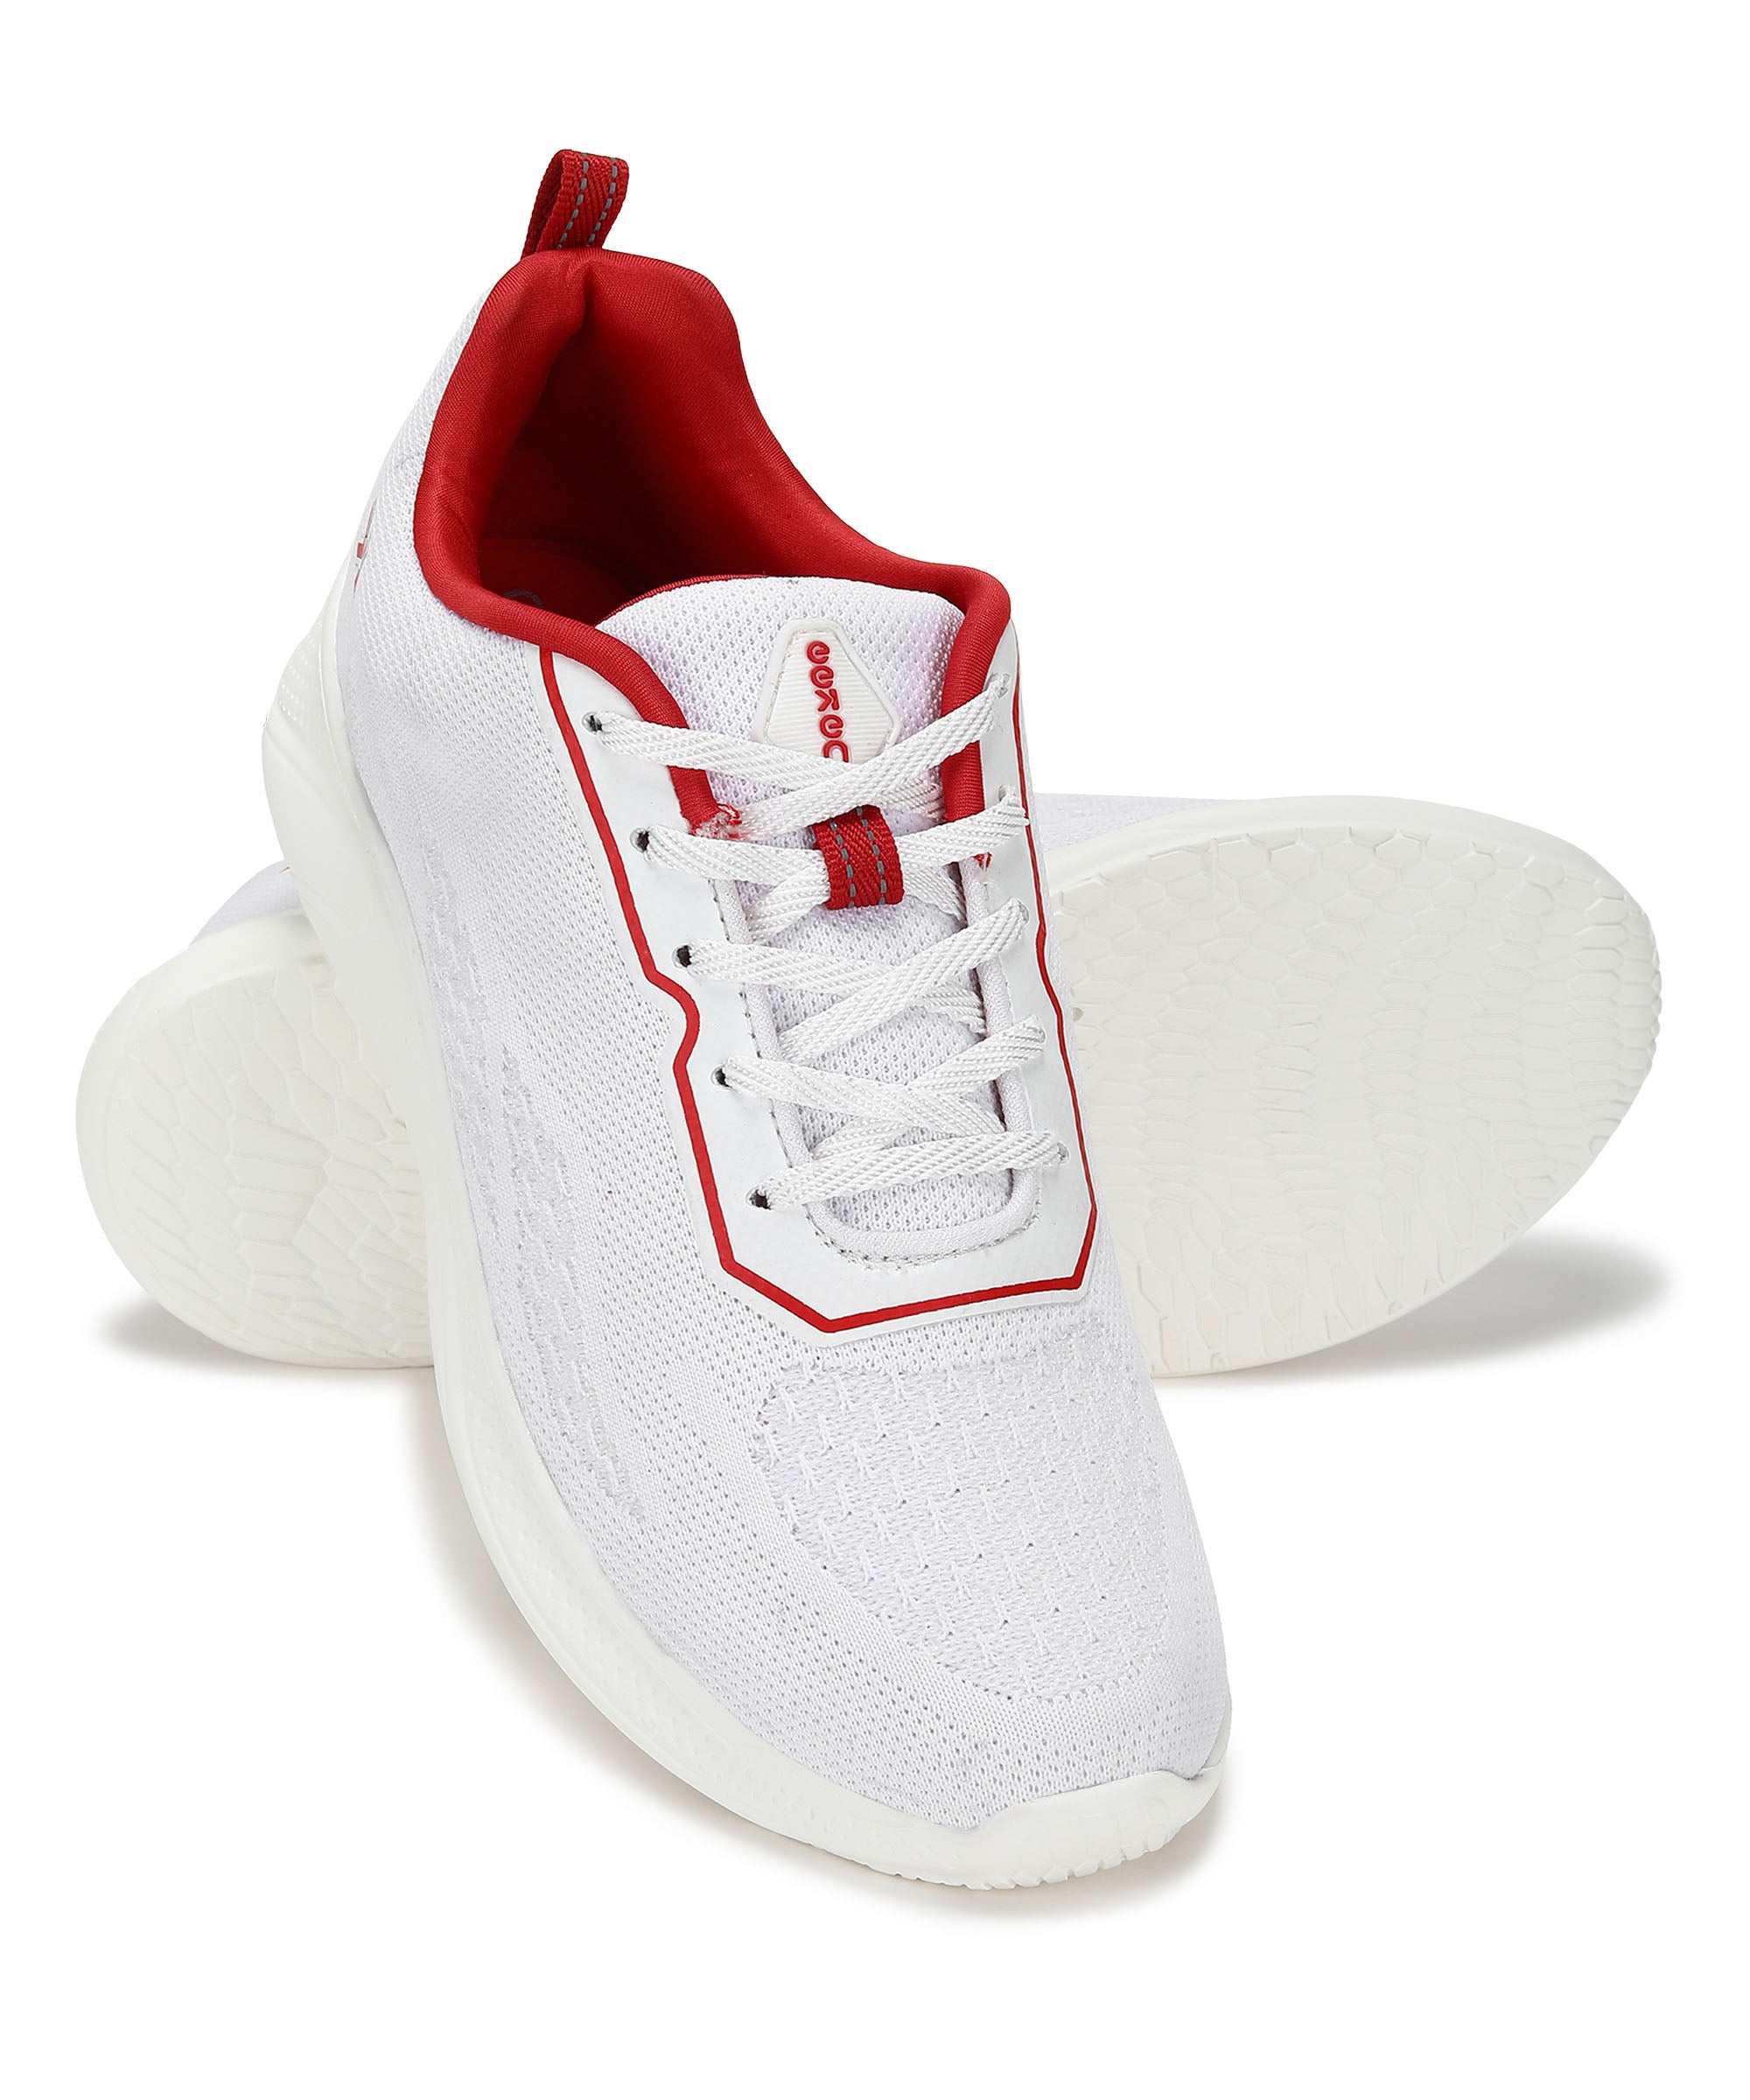 Eeken KE1234G White Comfortable Daily Outdoor Casual Walking Shoes For Men